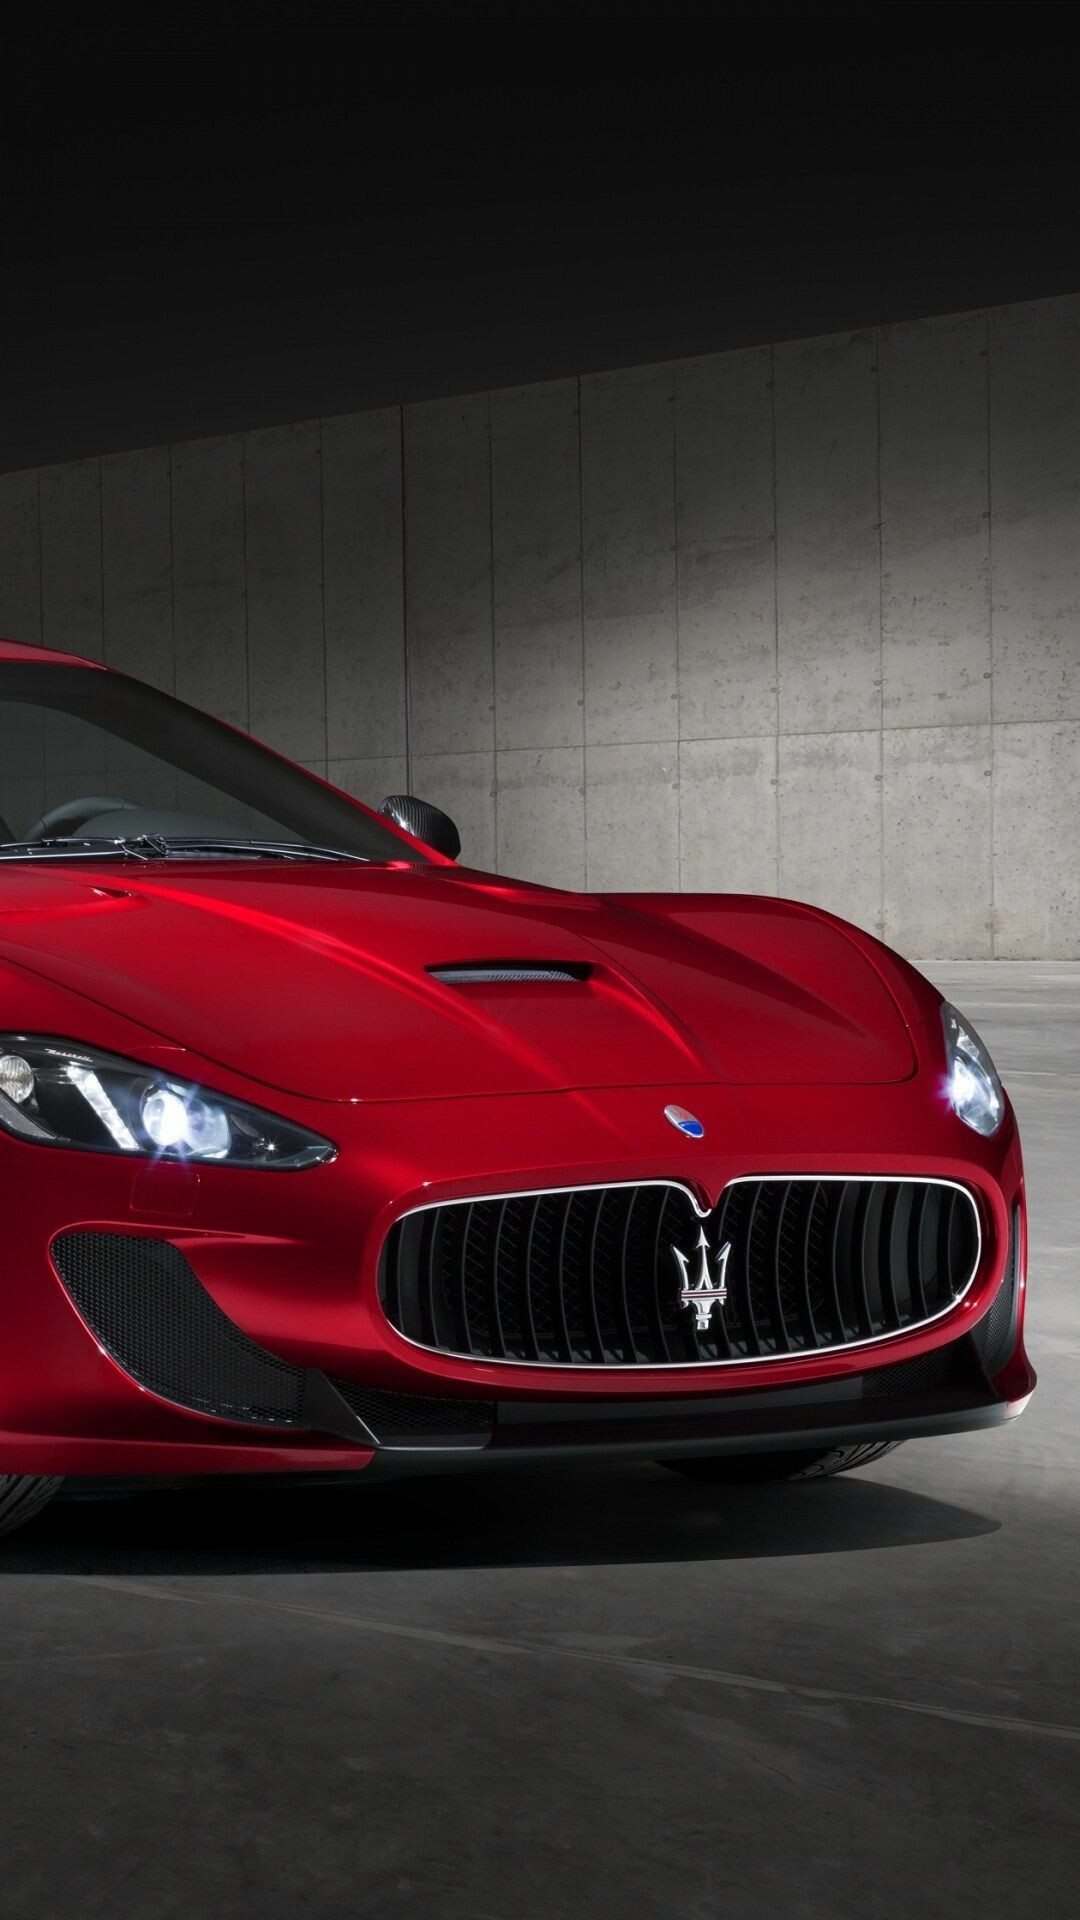 Maserati: GranTurismo MC, One of the most iconic Italian automotive brands. 1080x1920 Full HD Wallpaper.